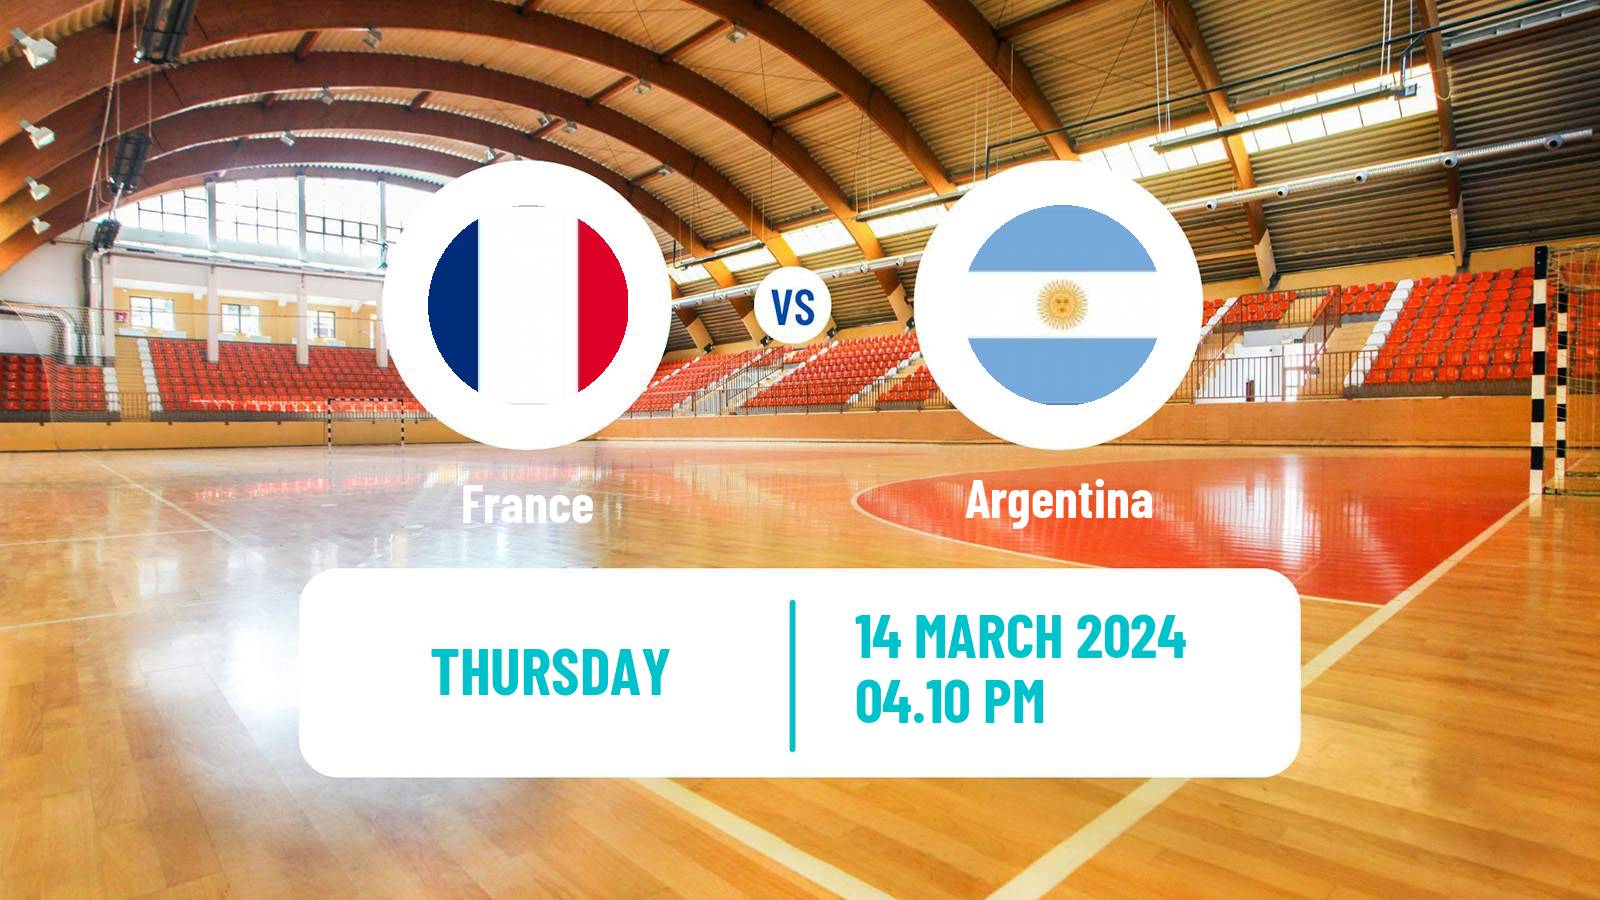 Handball Friendly International Handball France - Argentina